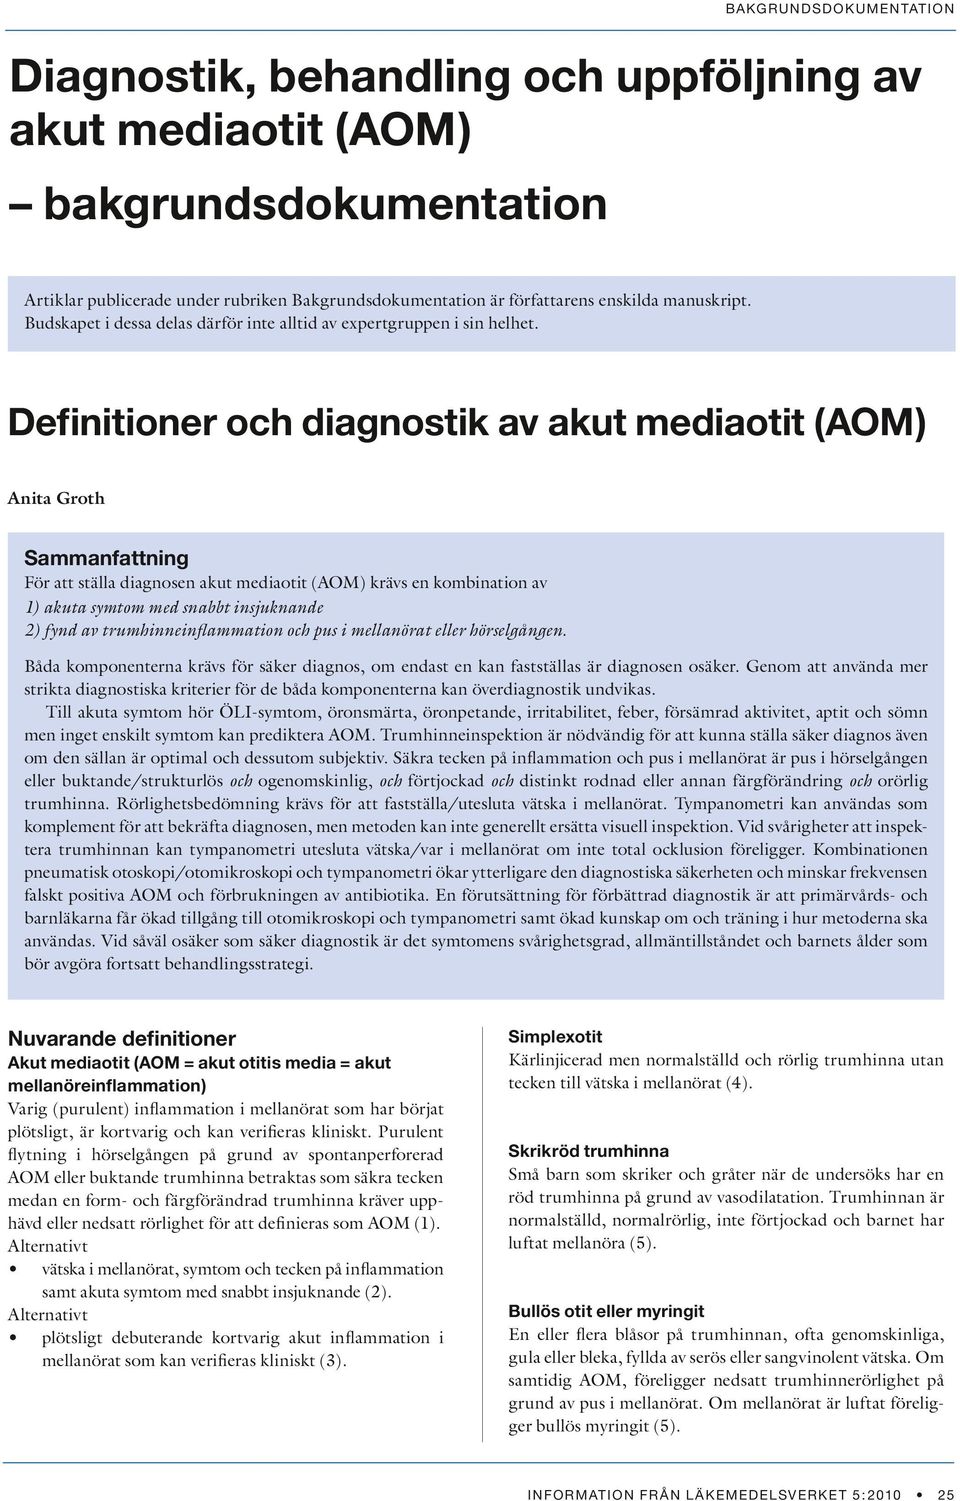 Definitioner och diagnostik av akut mediaotit (AOM) Anita Groth Sammanfattning För att ställa diagnosen akut mediaotit (AOM) krävs en kombination av 1) akuta symtom med snabbt insjuknande 2) fynd av